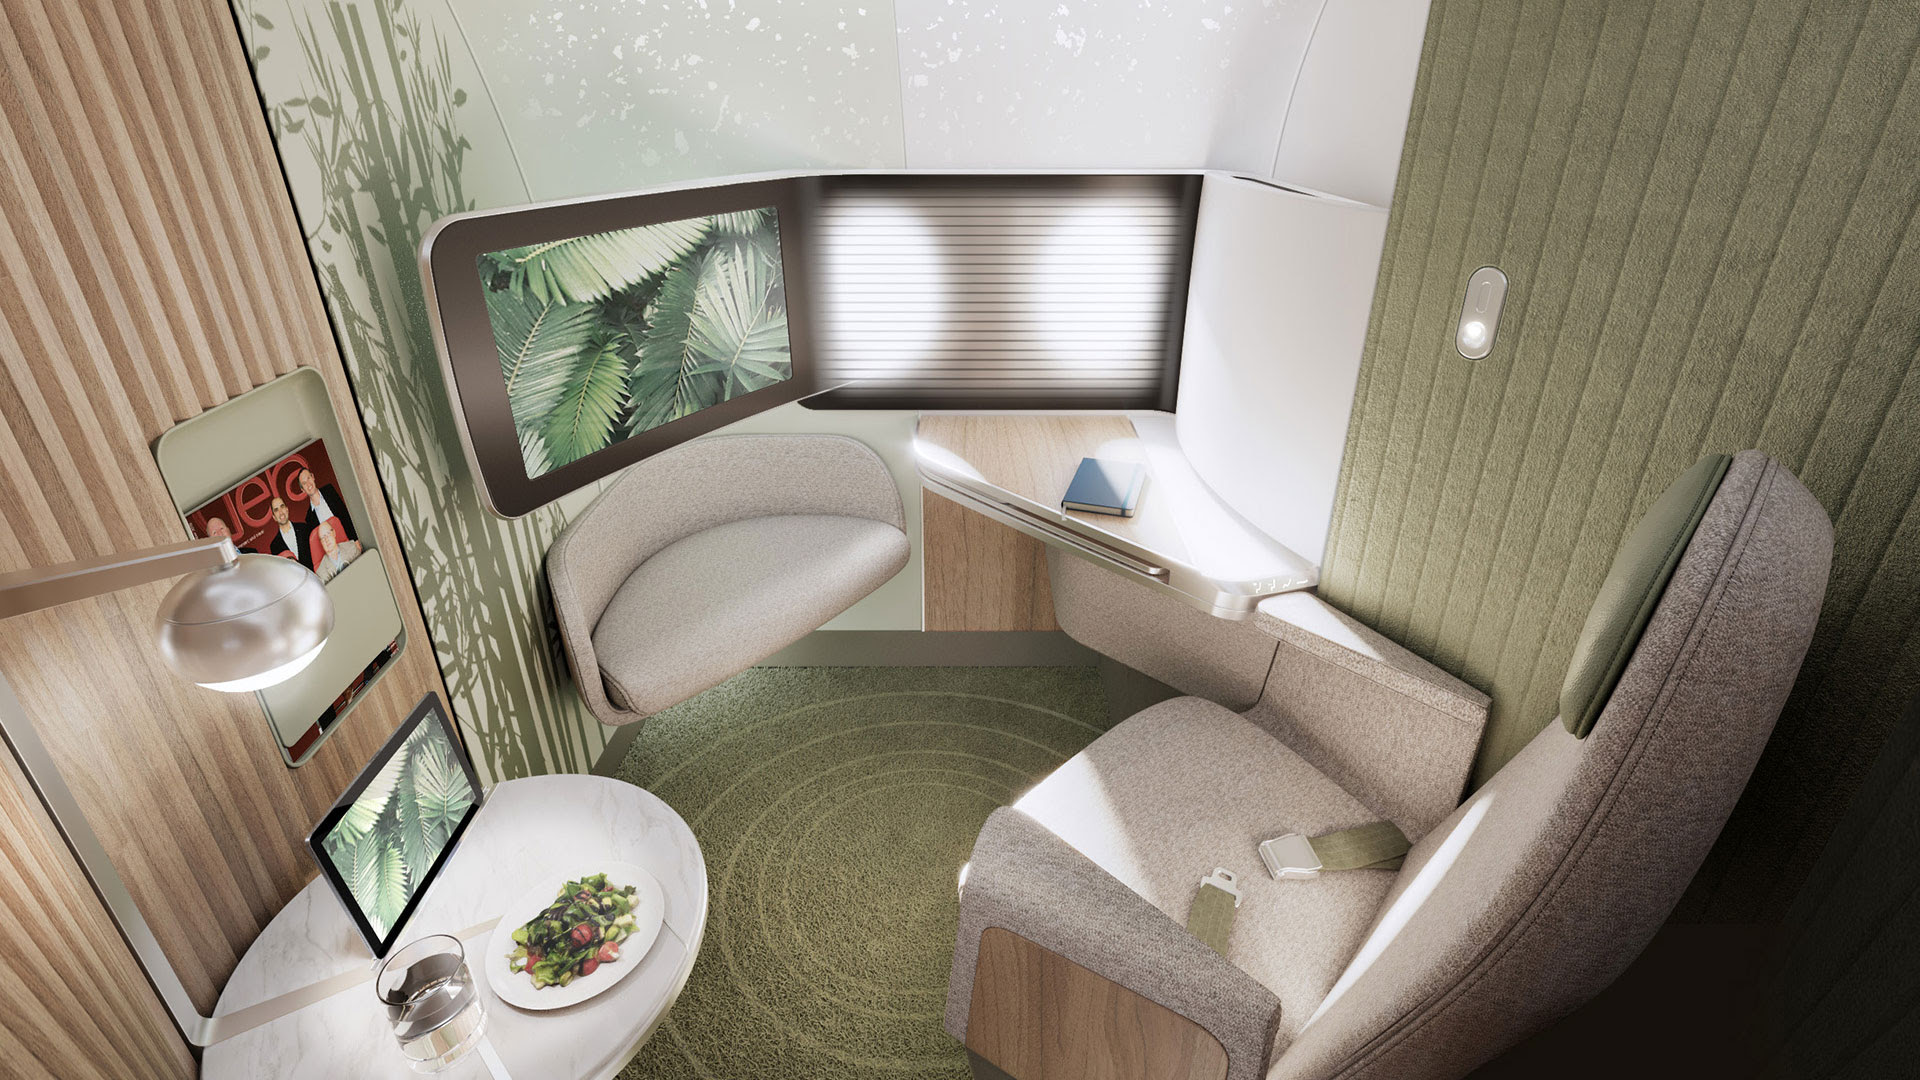 Imagen digital de cómo se vería una cabina diseñada con el concepto Elevate, diseñado para brindar mayor privacidad en asientos premium de aviones de pasillo único